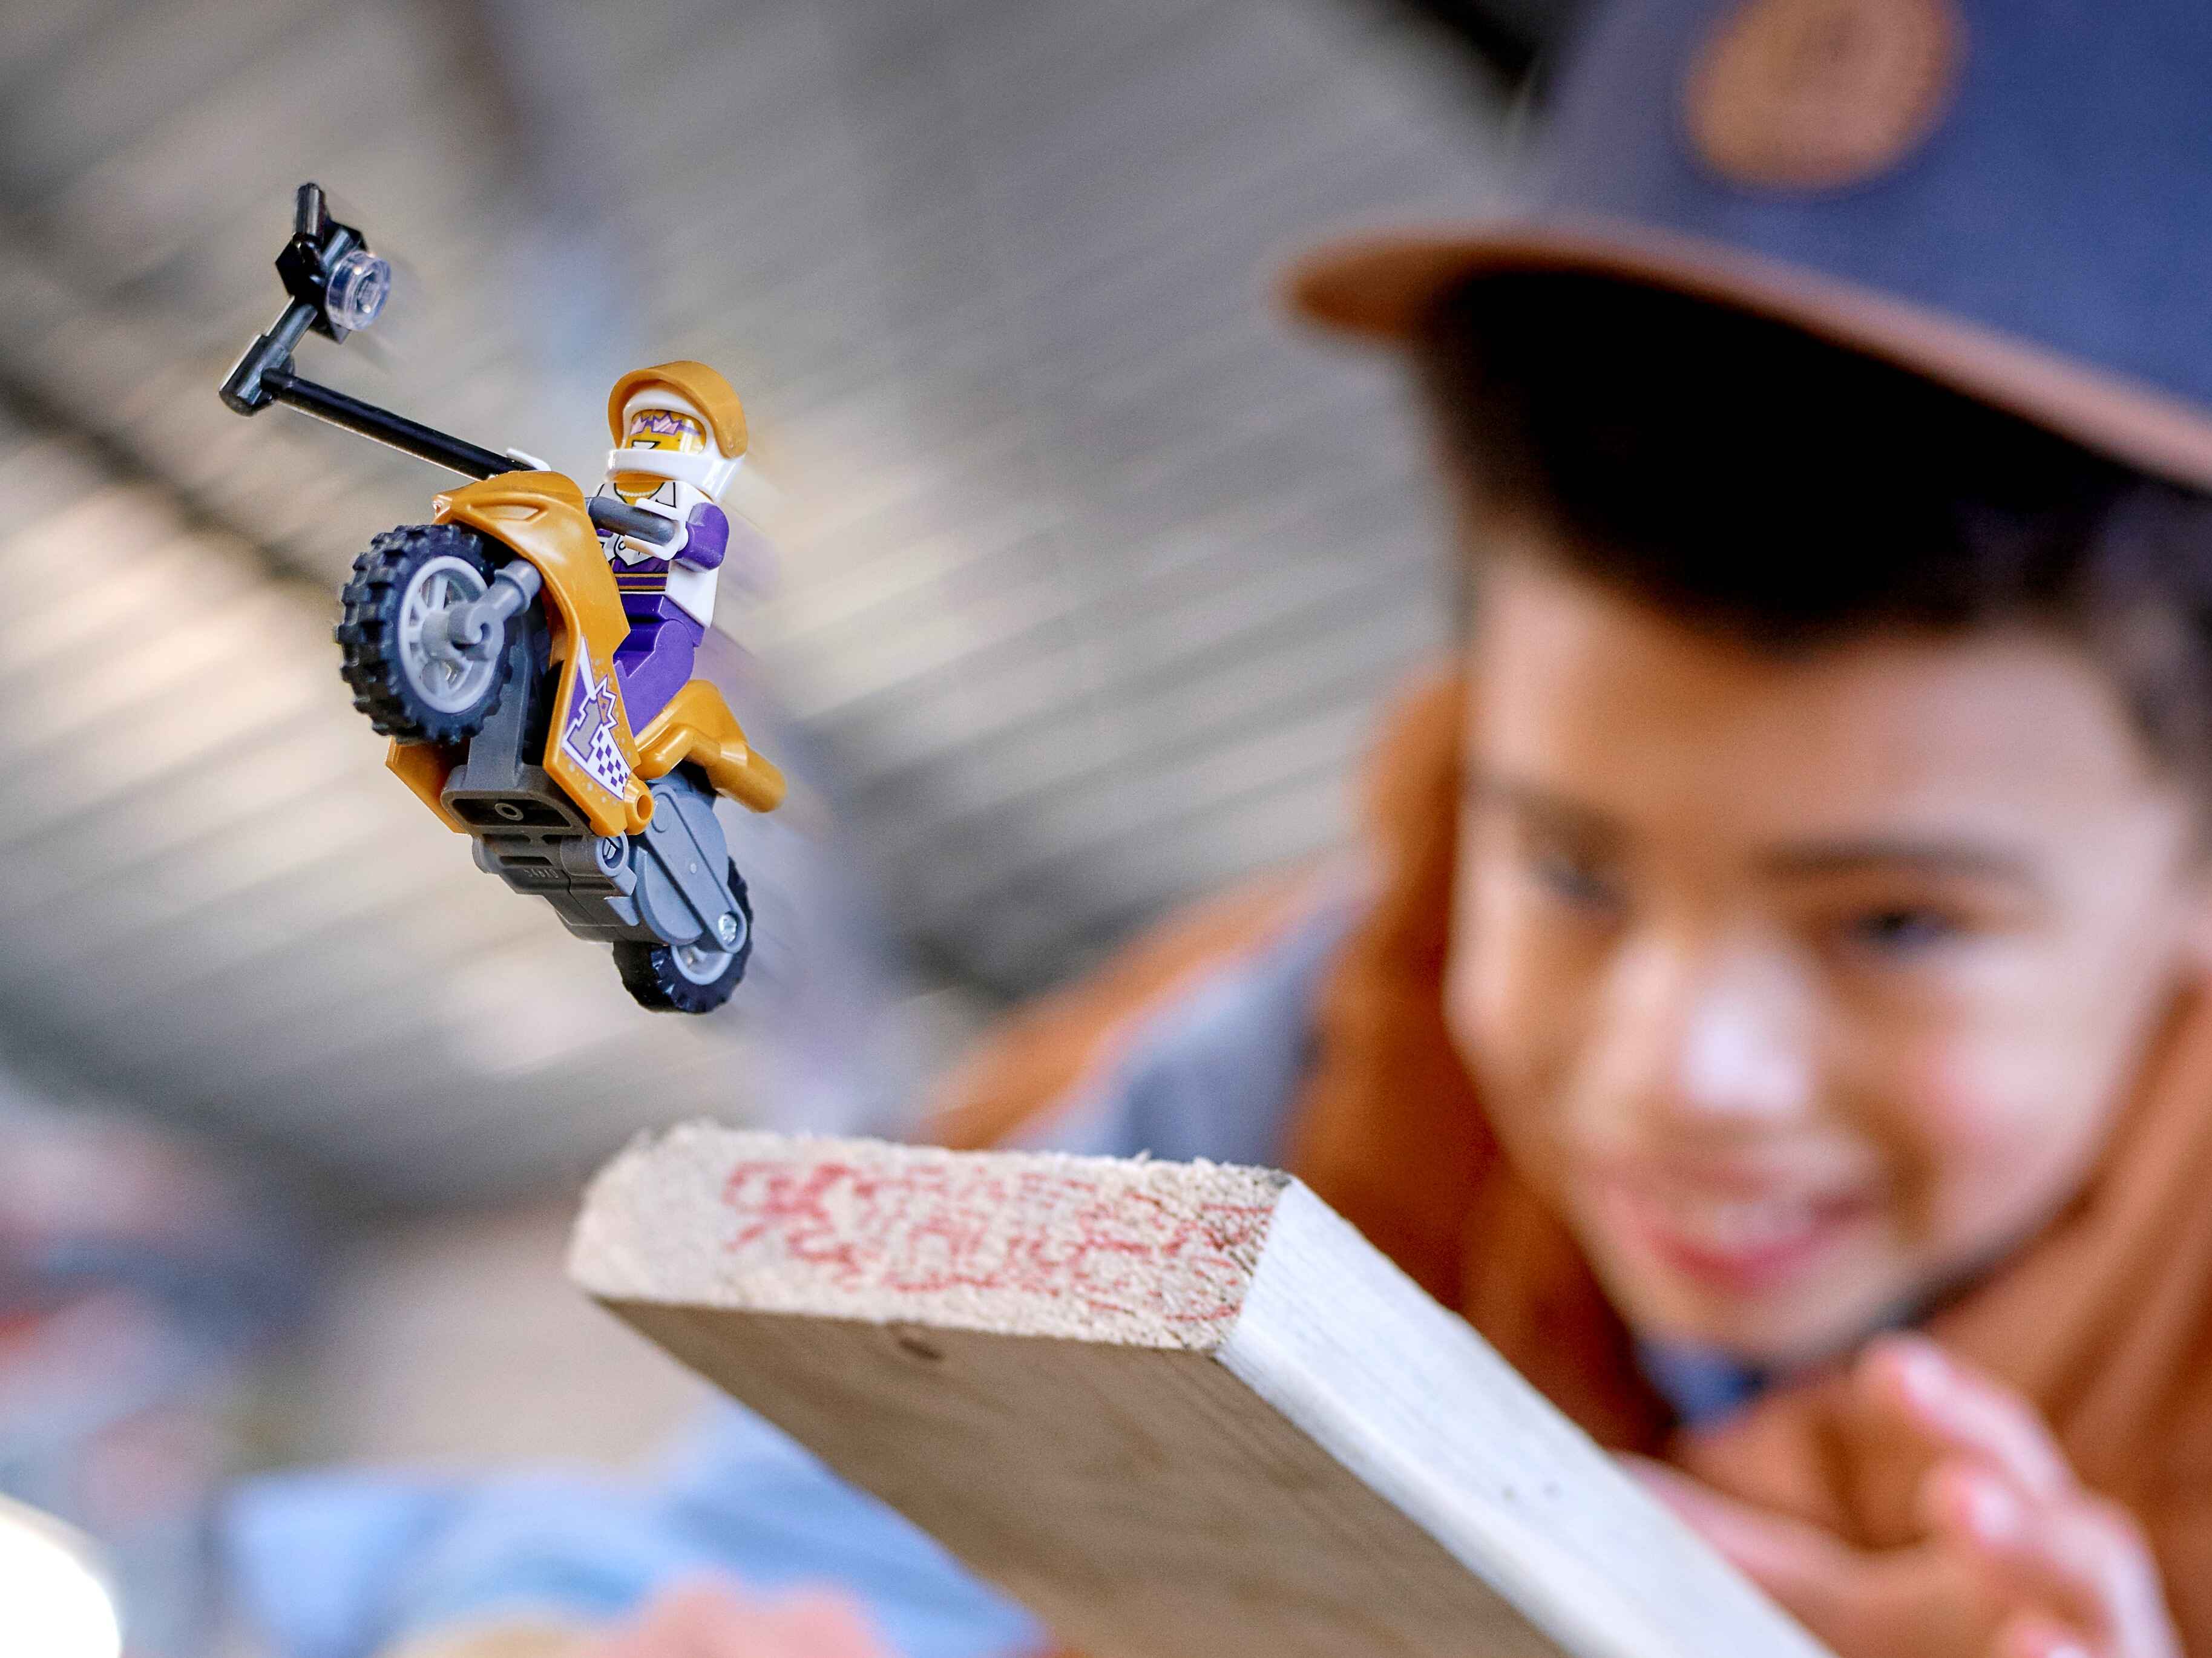 LEGO 60309 City Stuntz Selfie-Stuntbike Stuntshow Set mit Schwungradantrieb